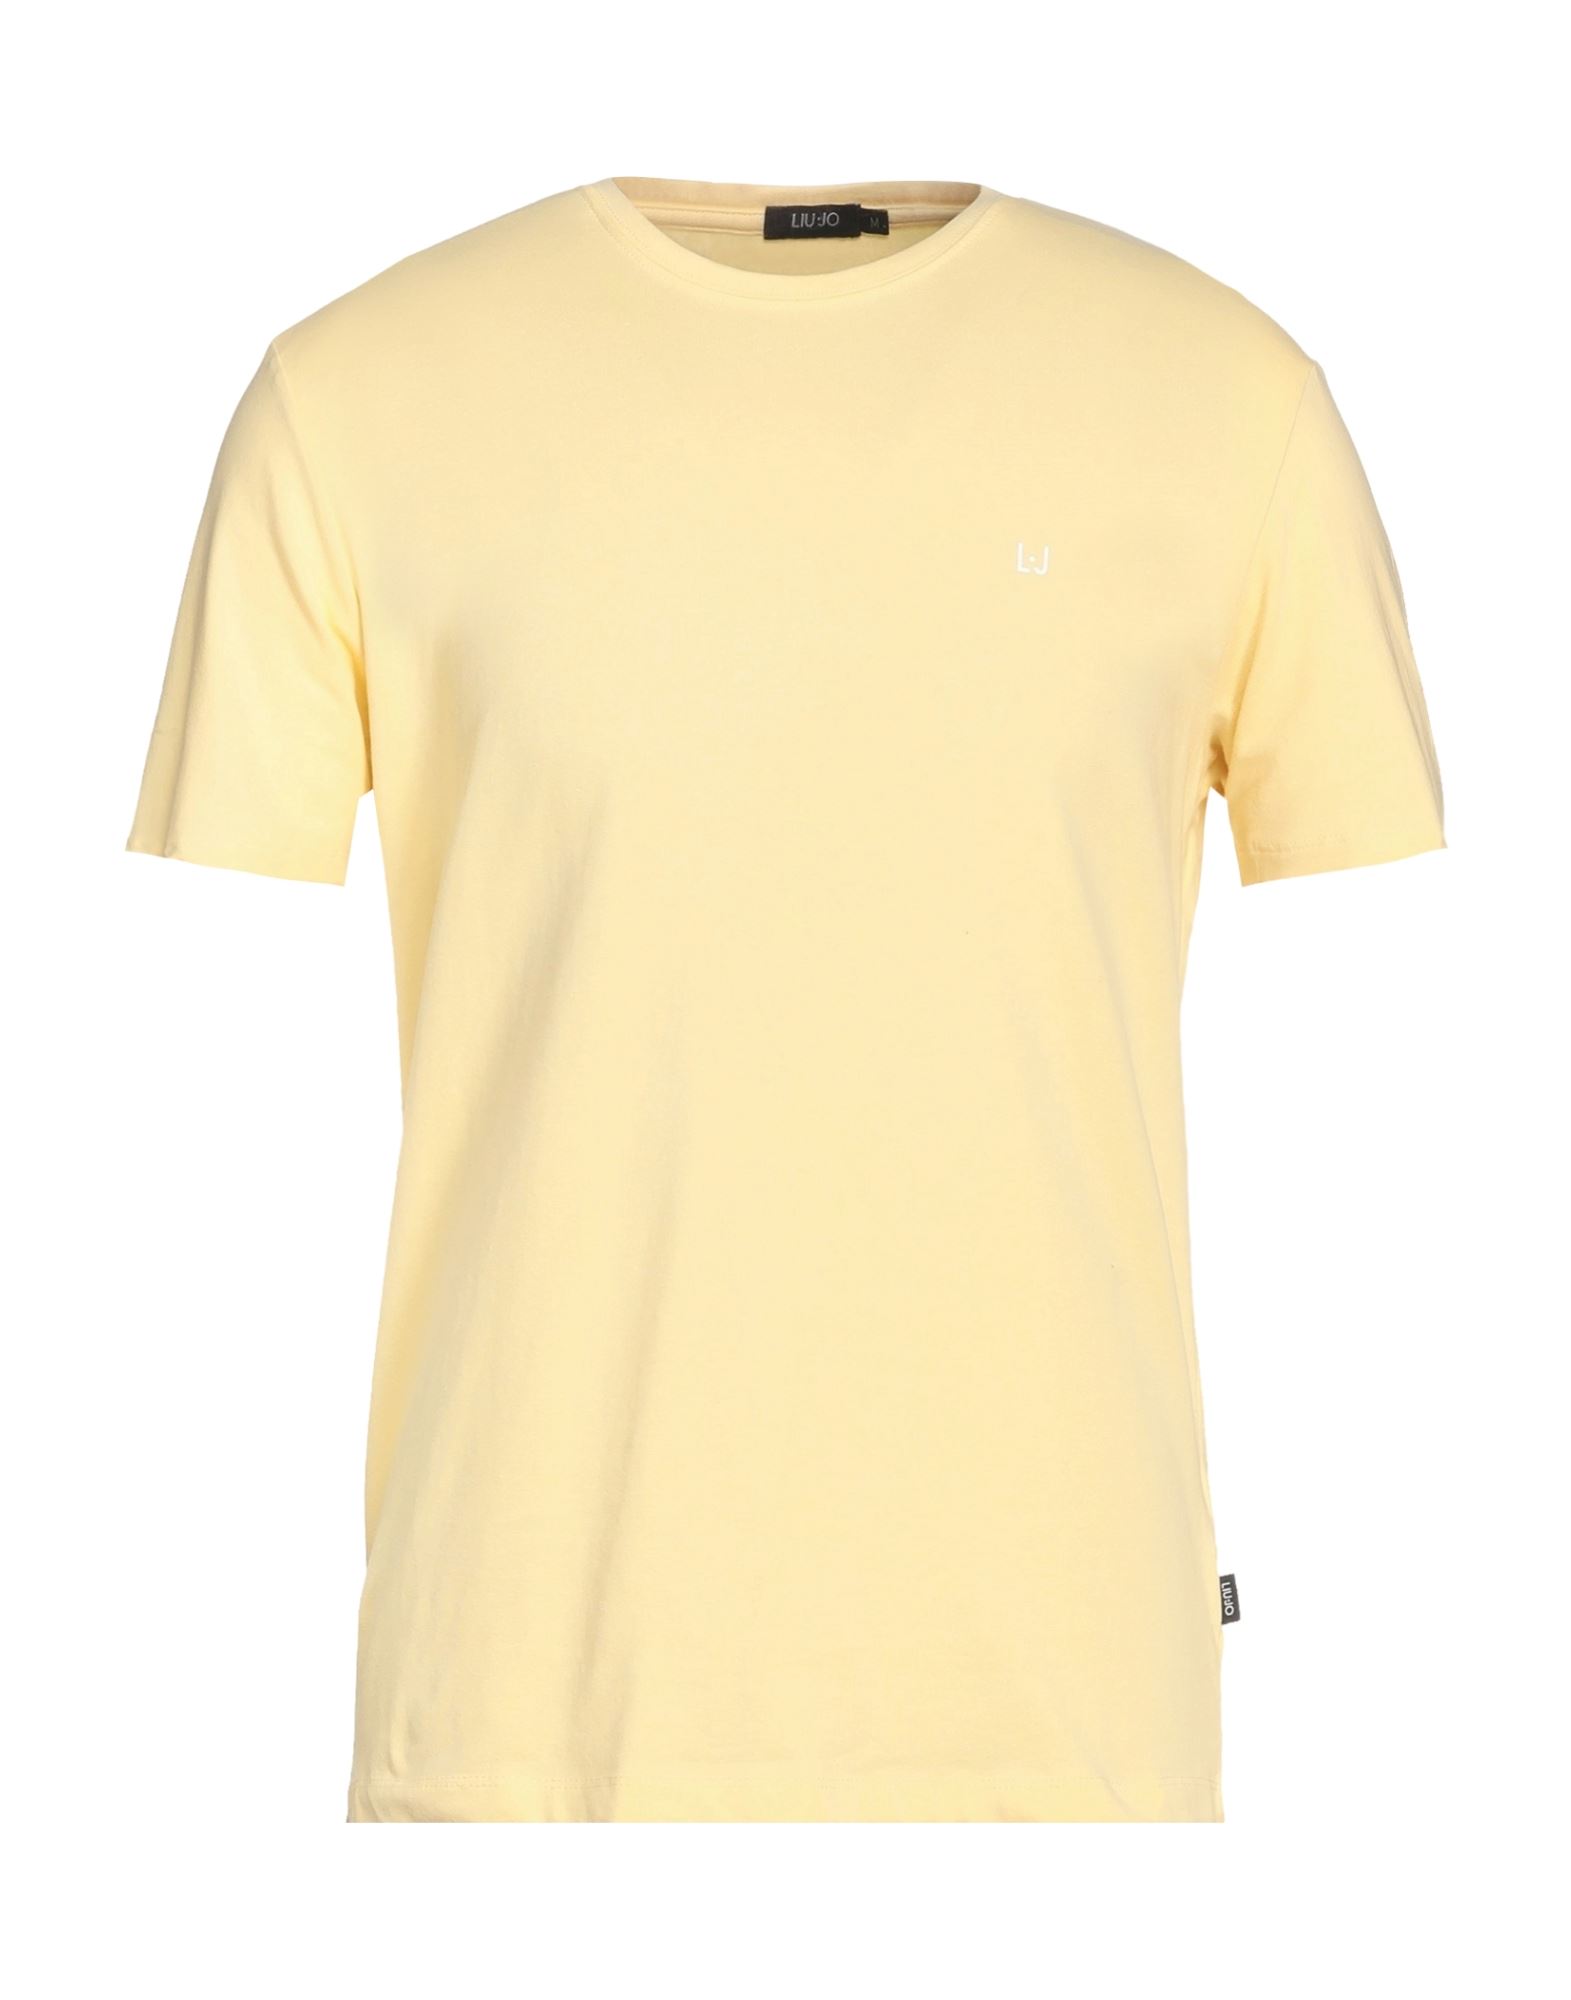 Liu •jo Man T-shirts In Yellow